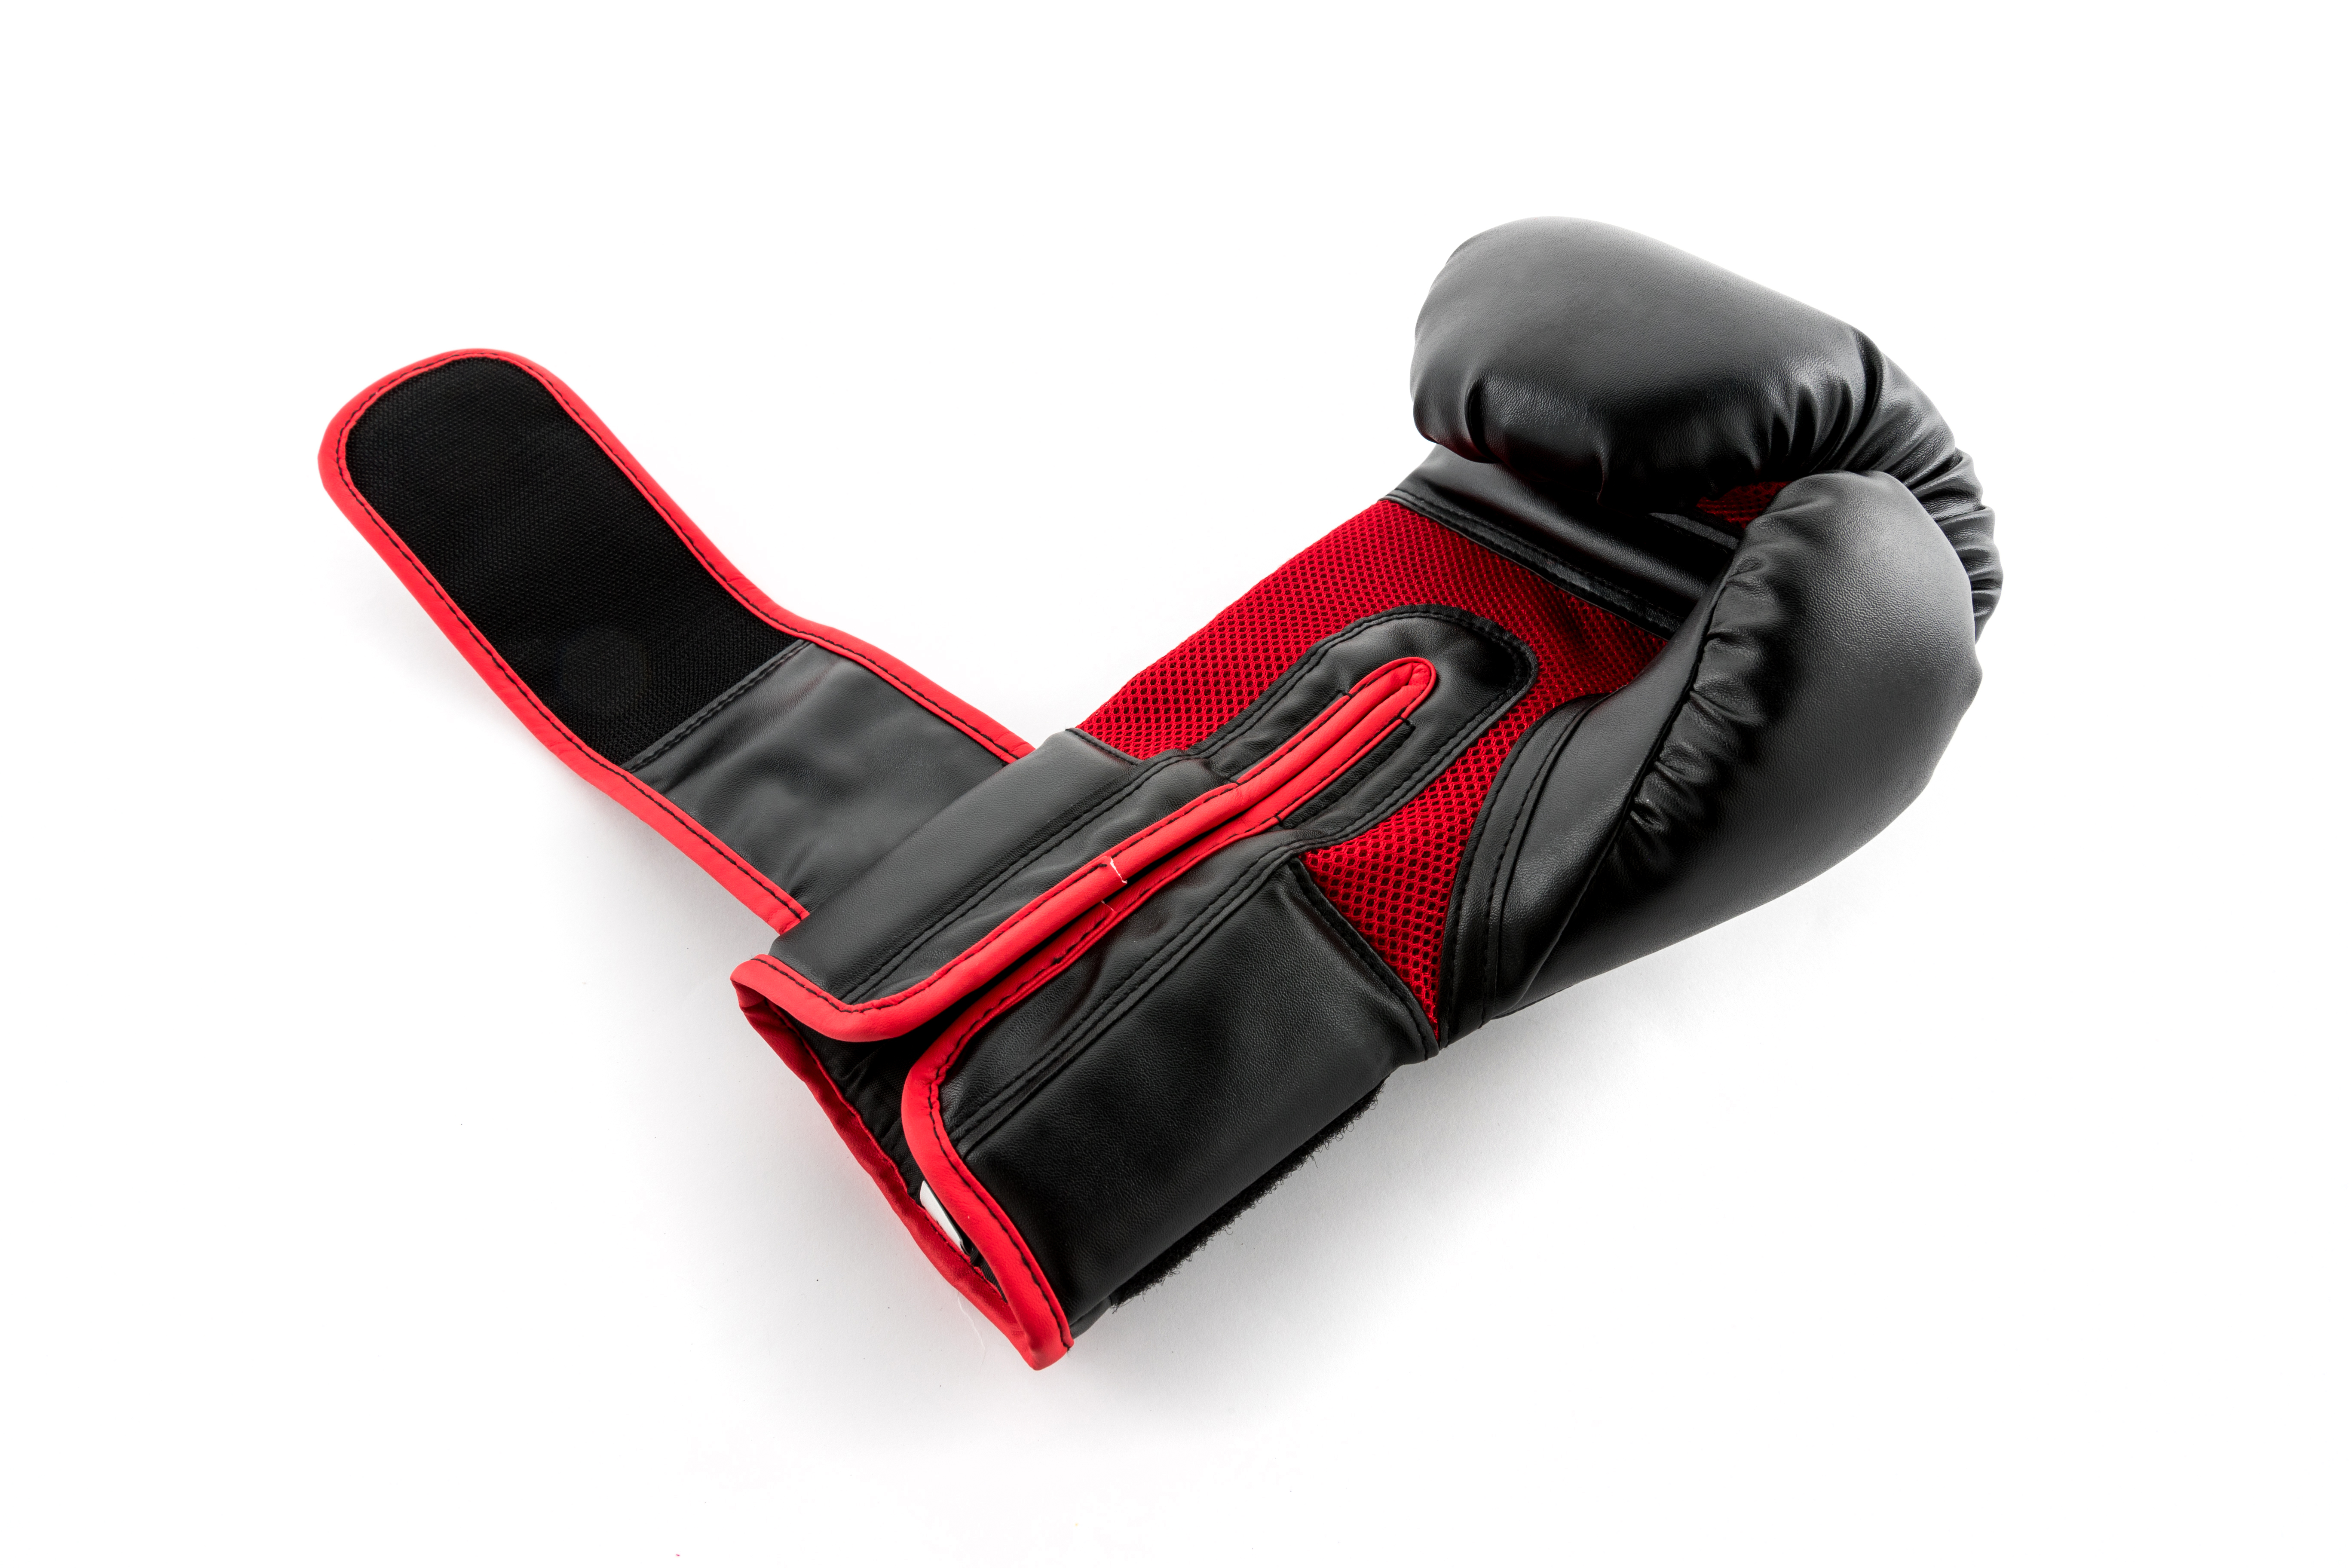 UFC Boxing Training Gloves 12 oz